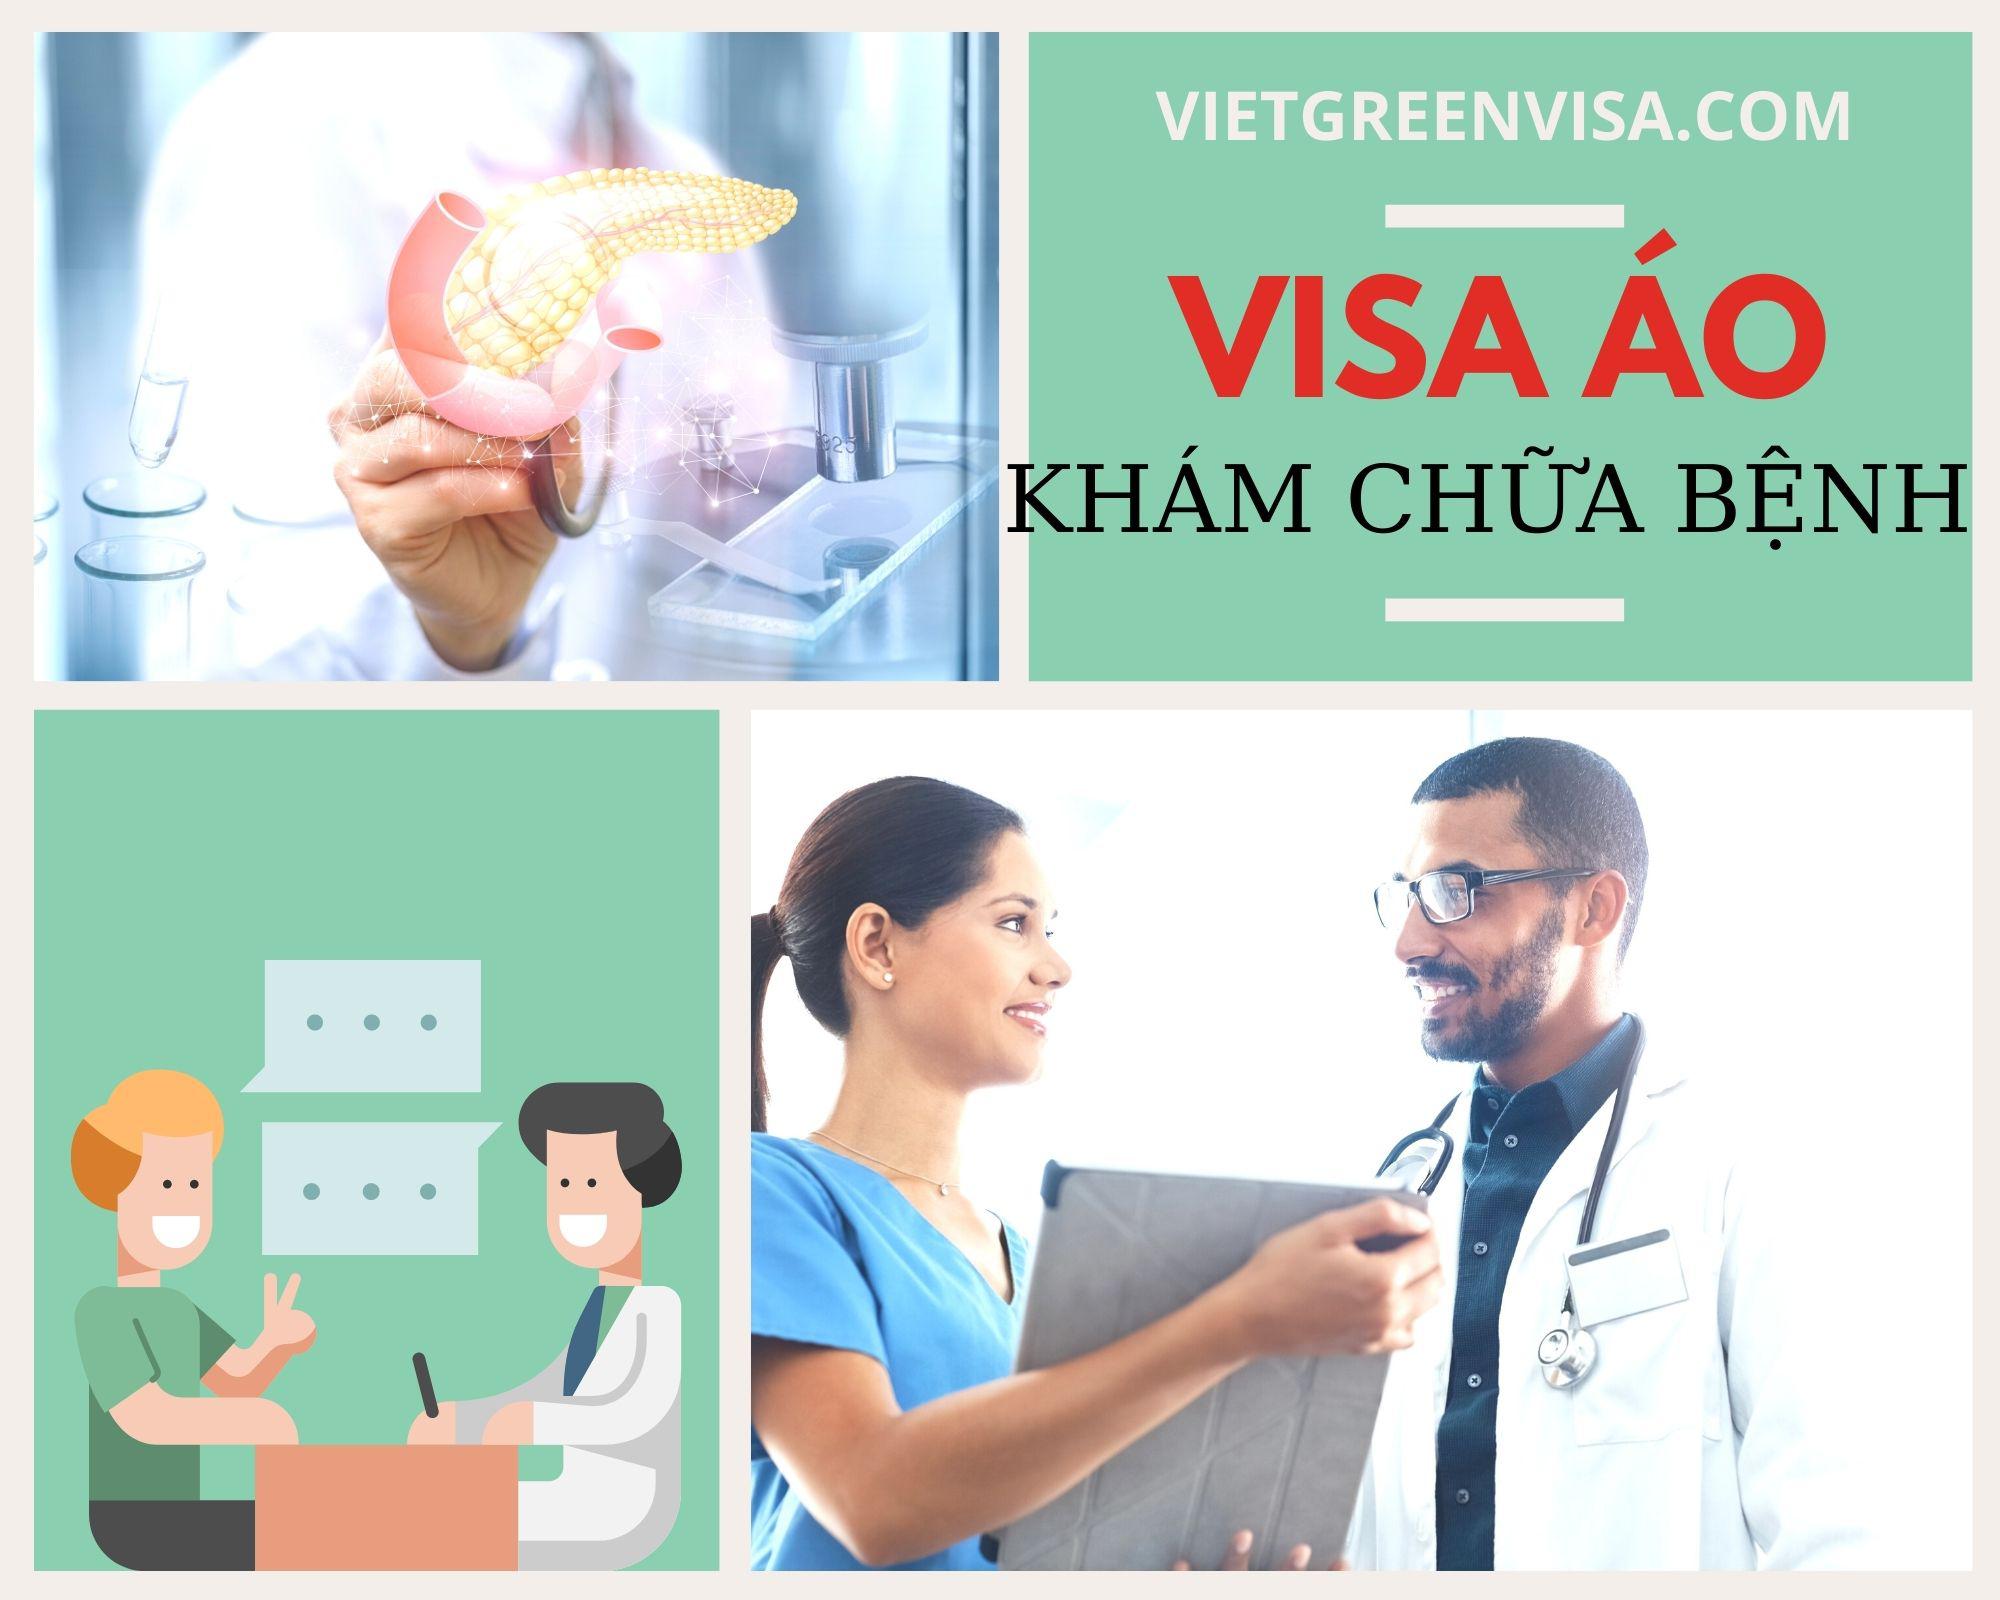 Dịch vụ visa đi Áo khám chữa bệnh nhanh chóng